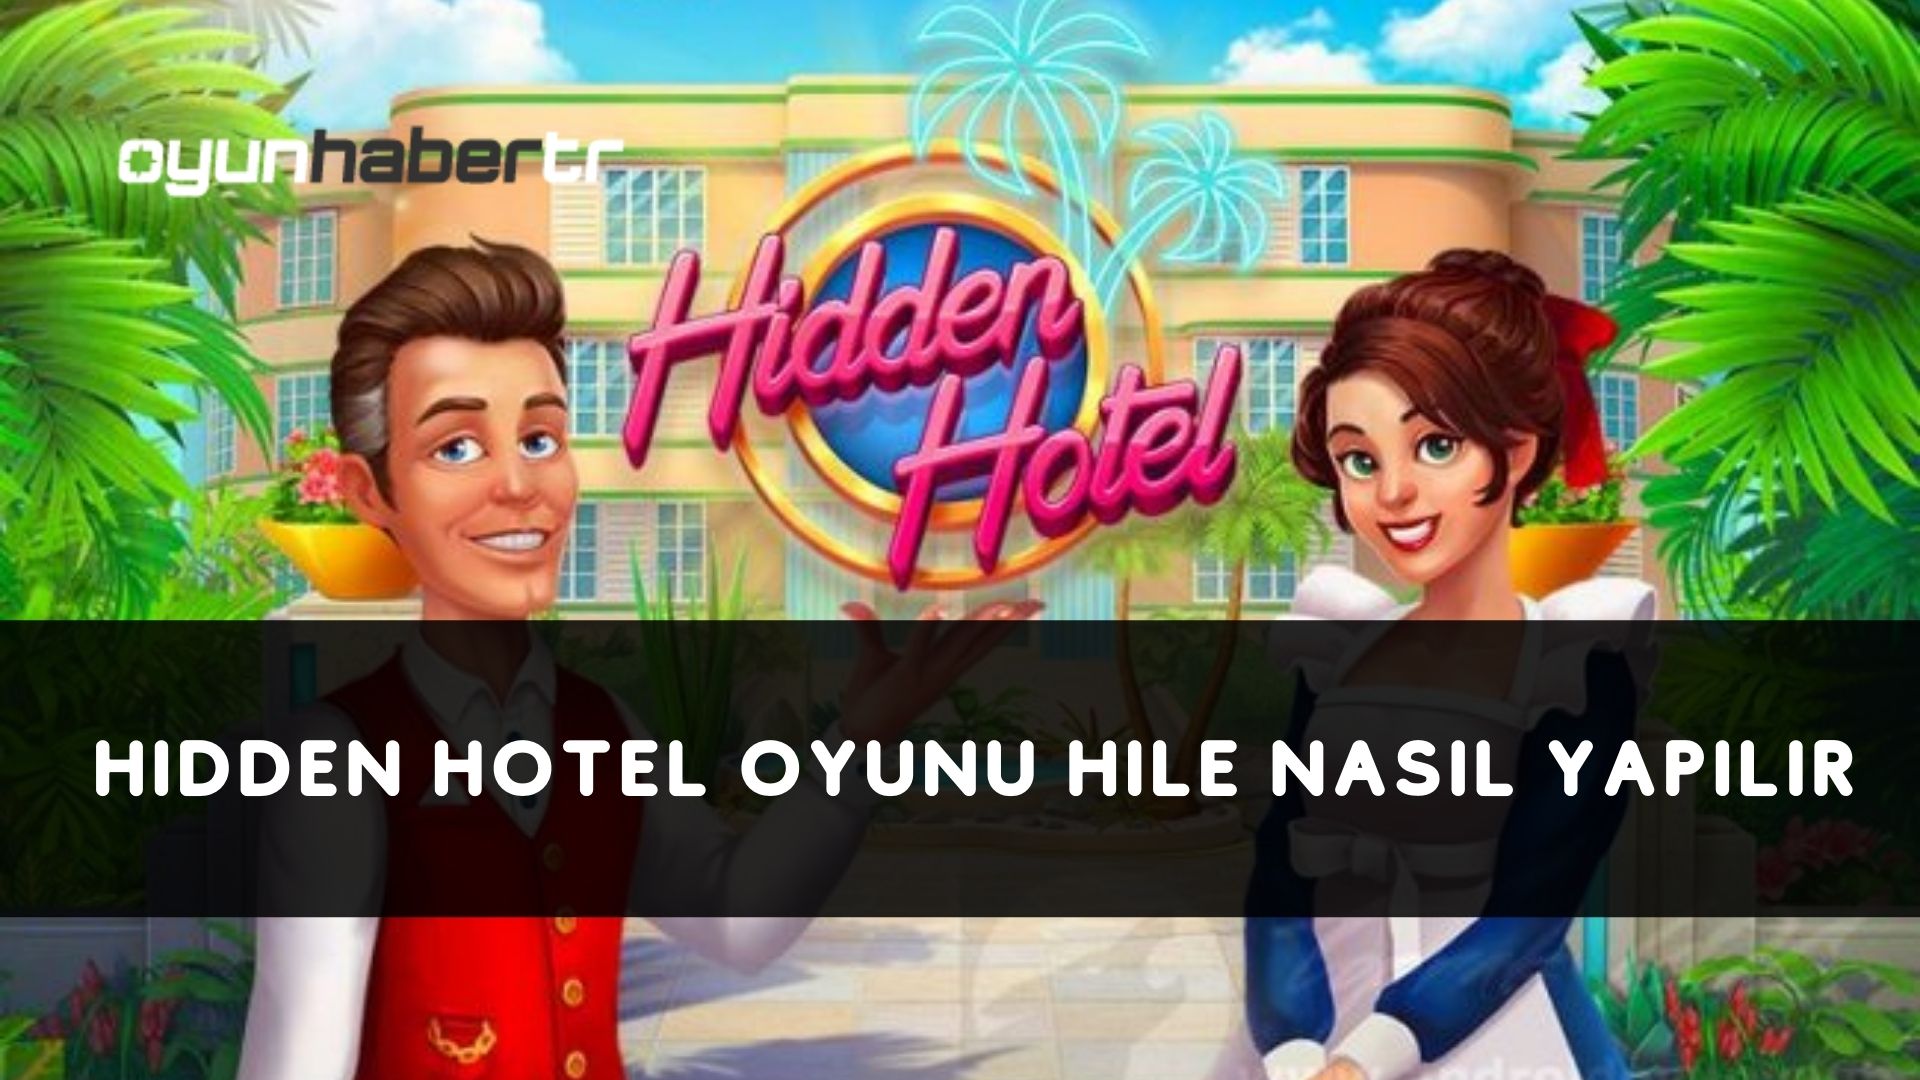 Hidden Hotel Oyunu Hile Nasıl Yapılır